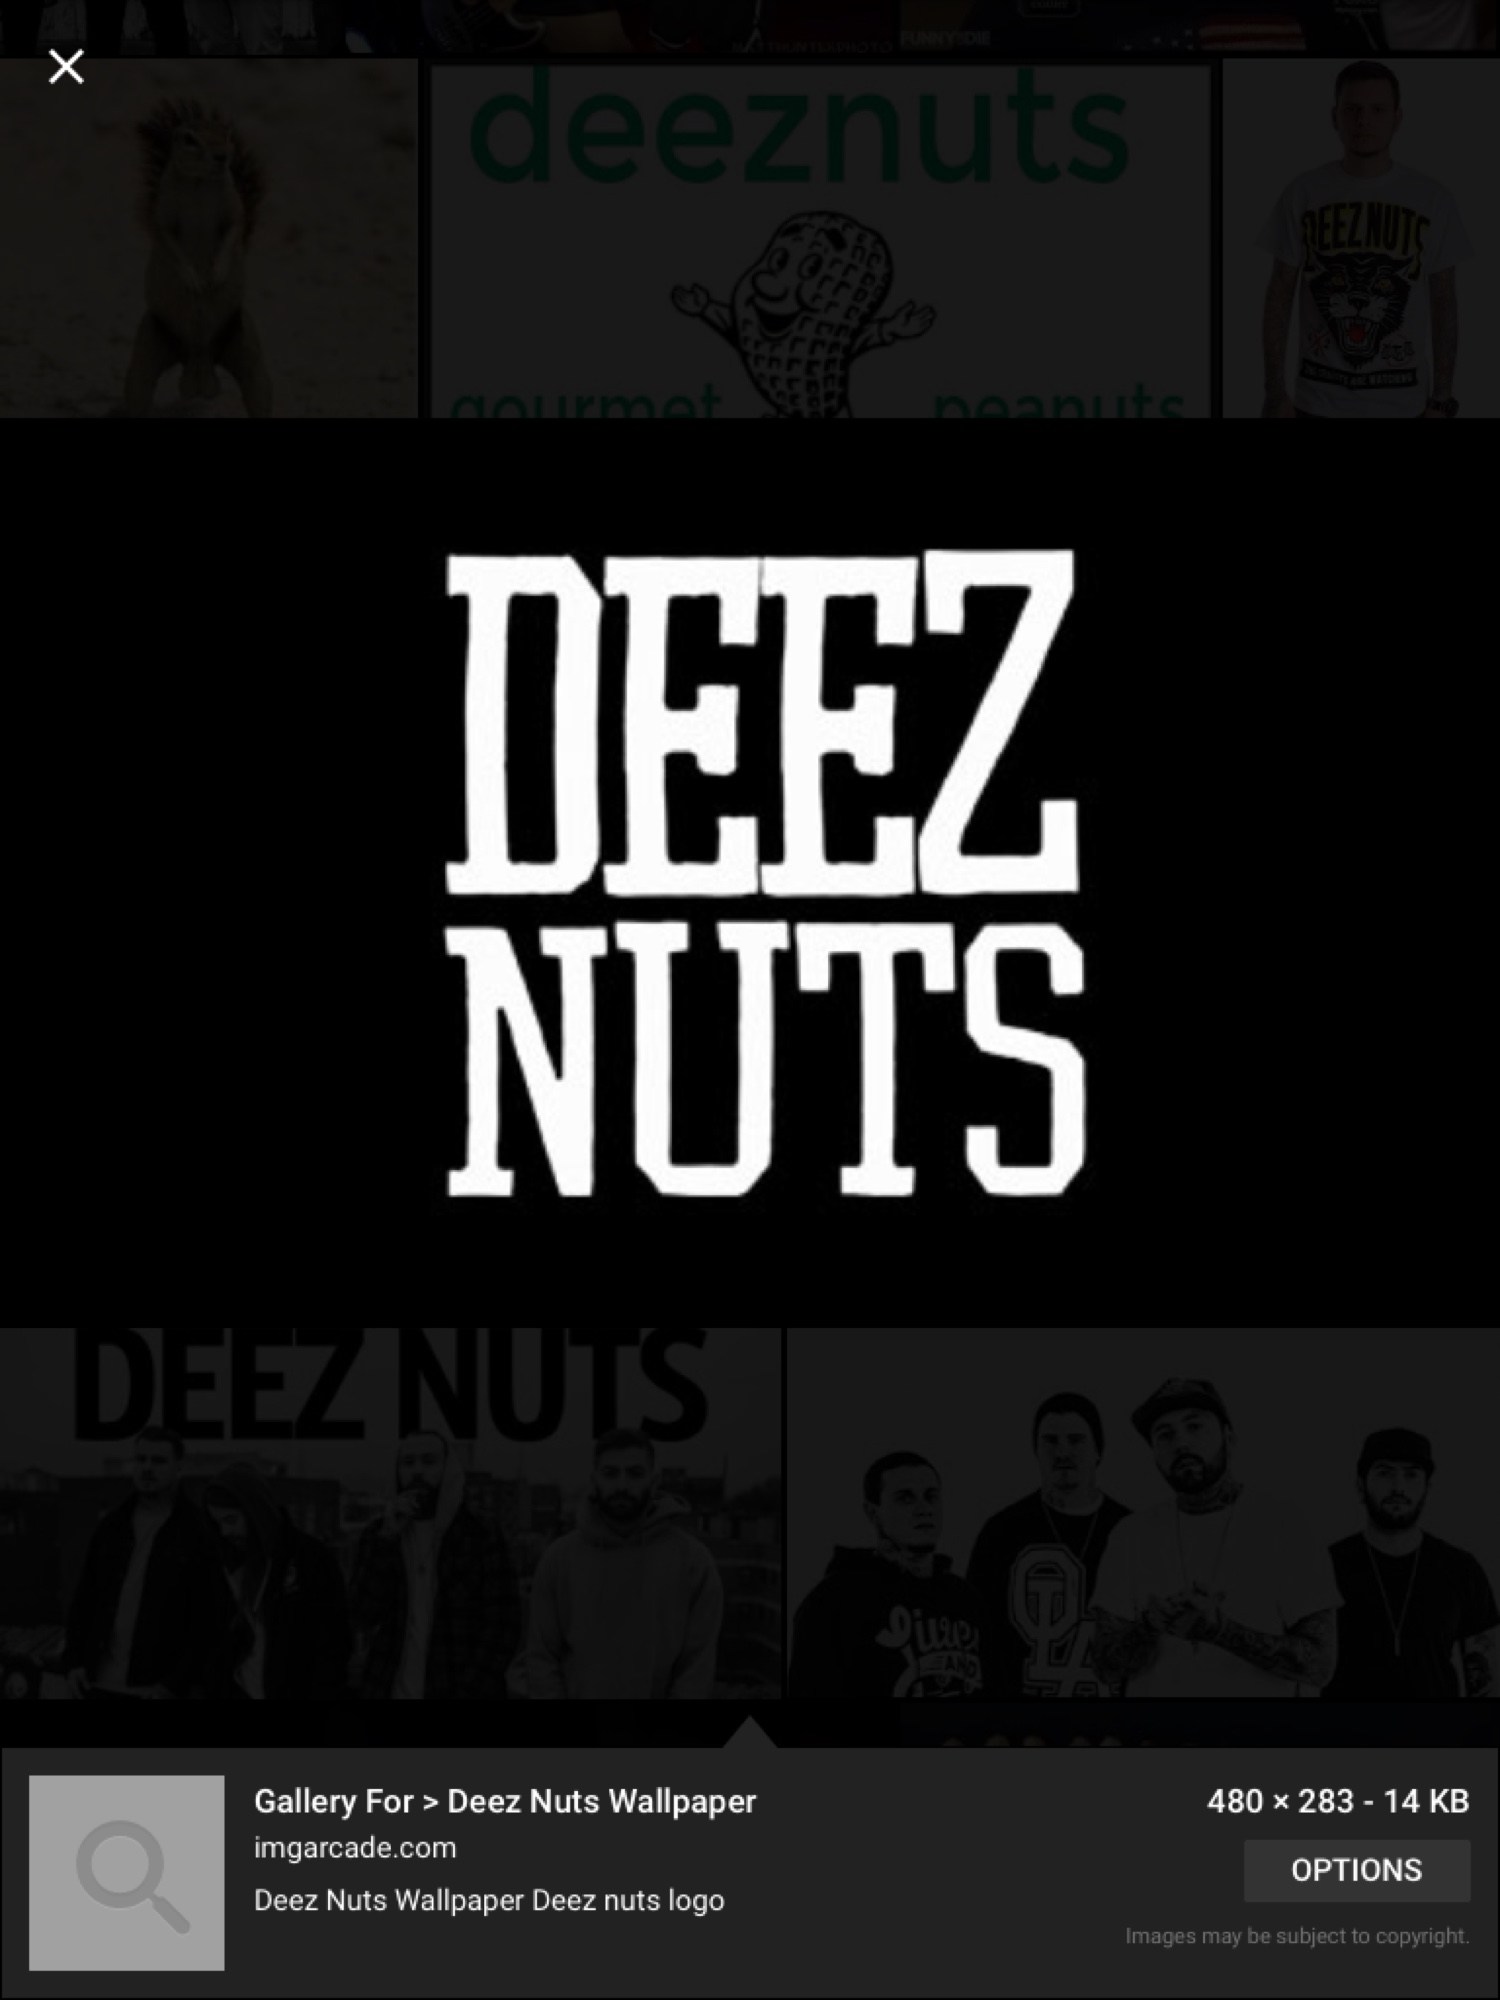 Deez Nuts Stay True , HD Wallpaper & Backgrounds